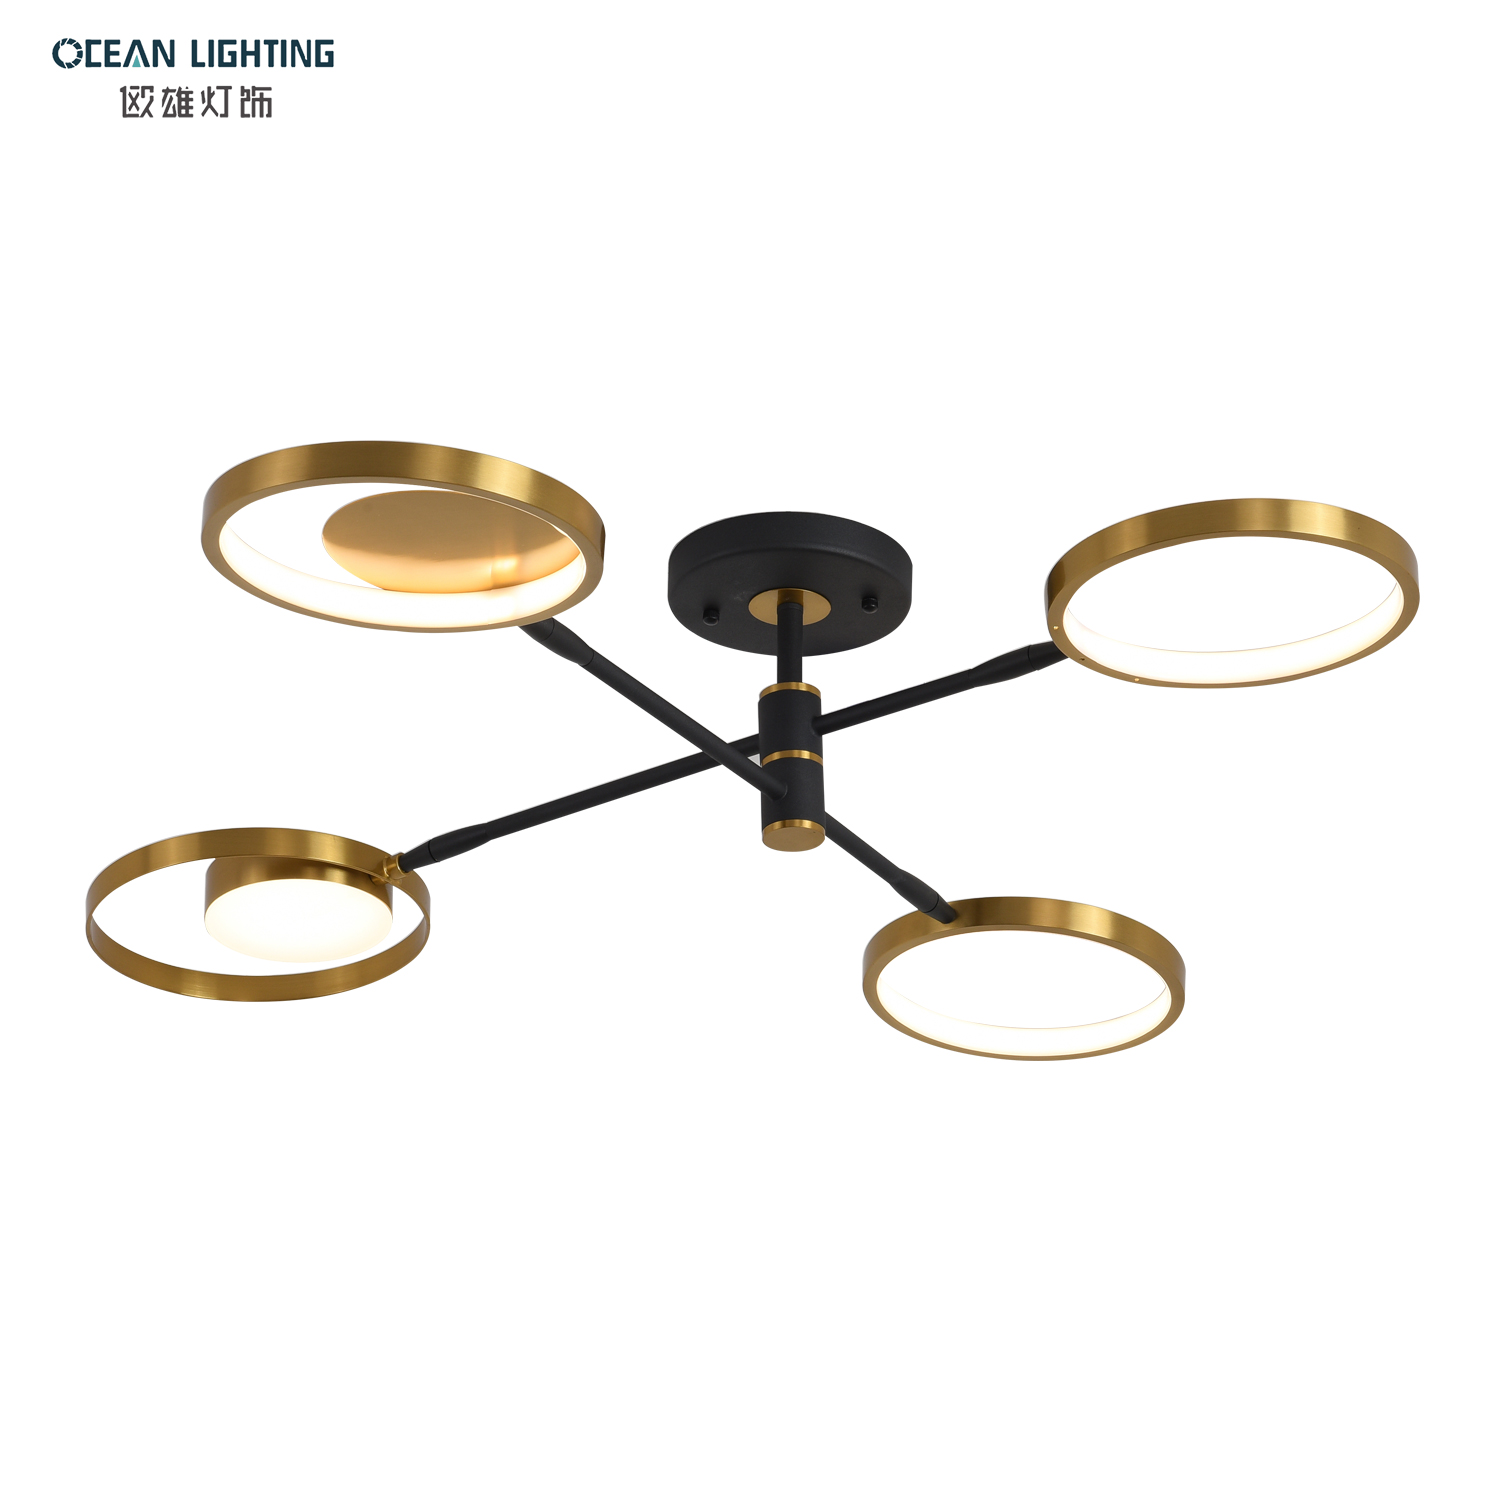 Ocean Lighting LED Modern Home Decorative Gold Ceiling Light